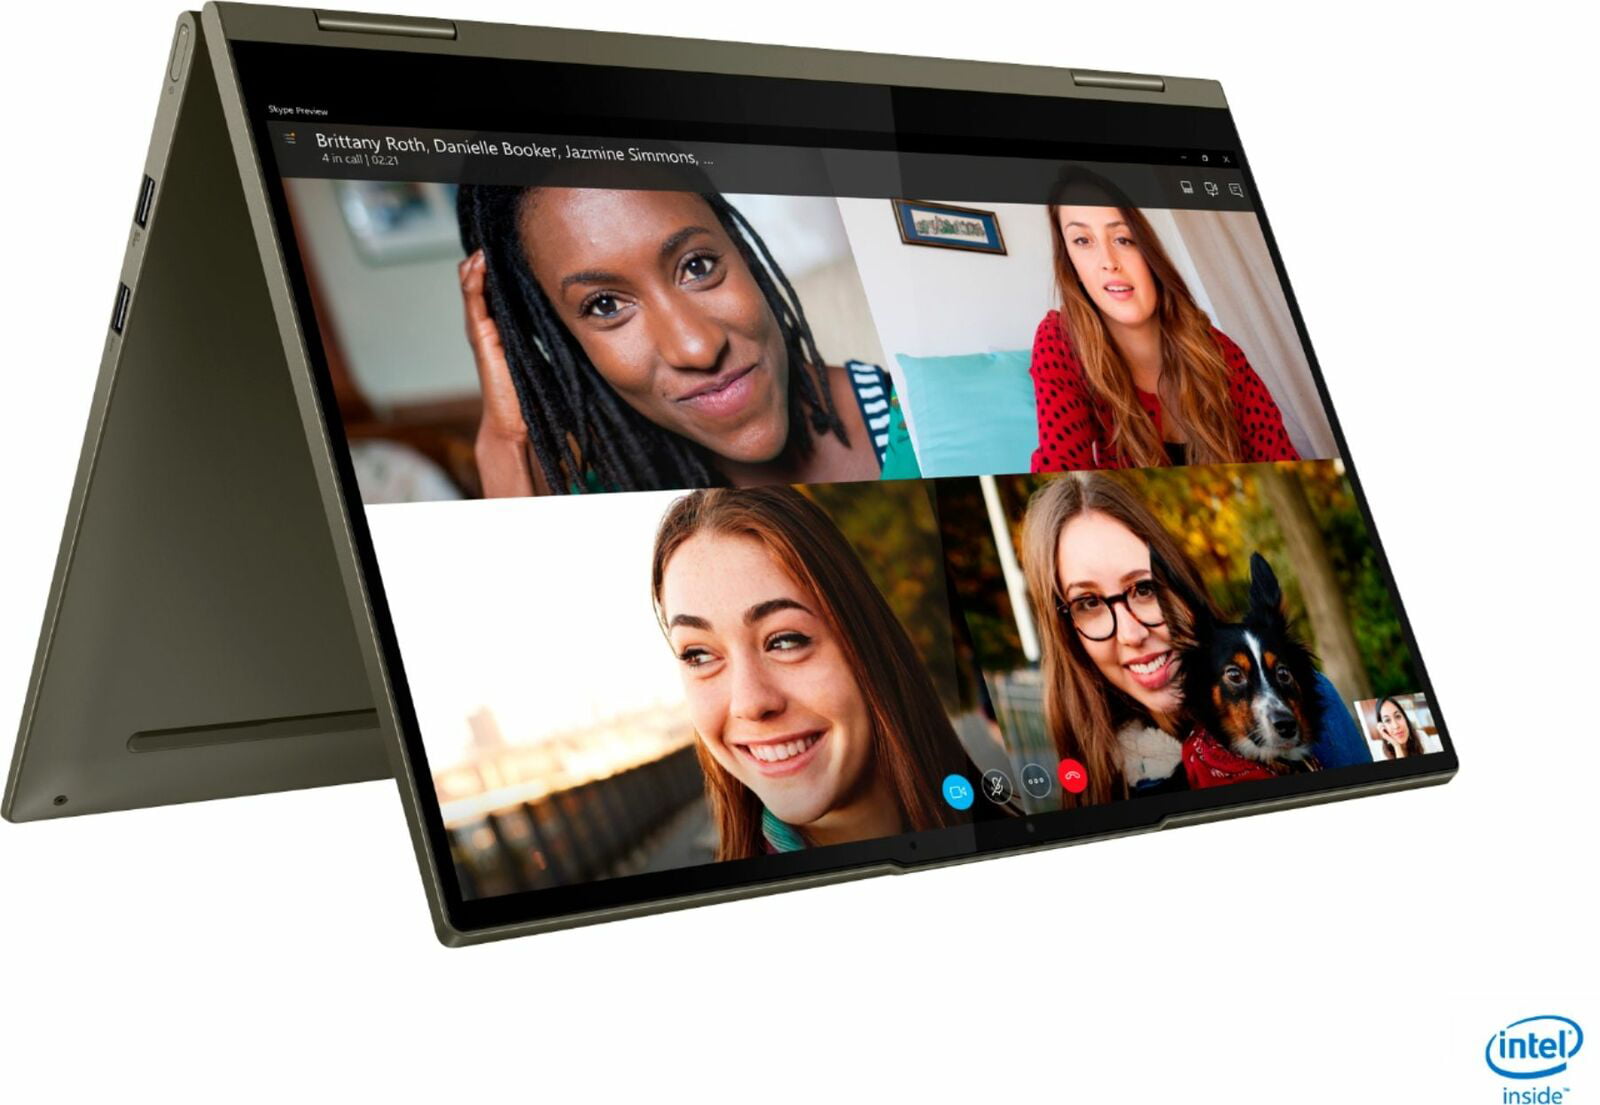 Máy tính xách tay màn hình cảm ứng 2 trong 1 Lenovo Yoga 7i là sự lựa chọn hoàn hảo cho những ai yêu thích sự tiện lợi và đa năng hơn. Hãy xem hình ảnh liên quan để chiêm ngưỡng những tính năng vượt trội của máy tính này và cảm nhận sự khác biệt mà nó mang lại.